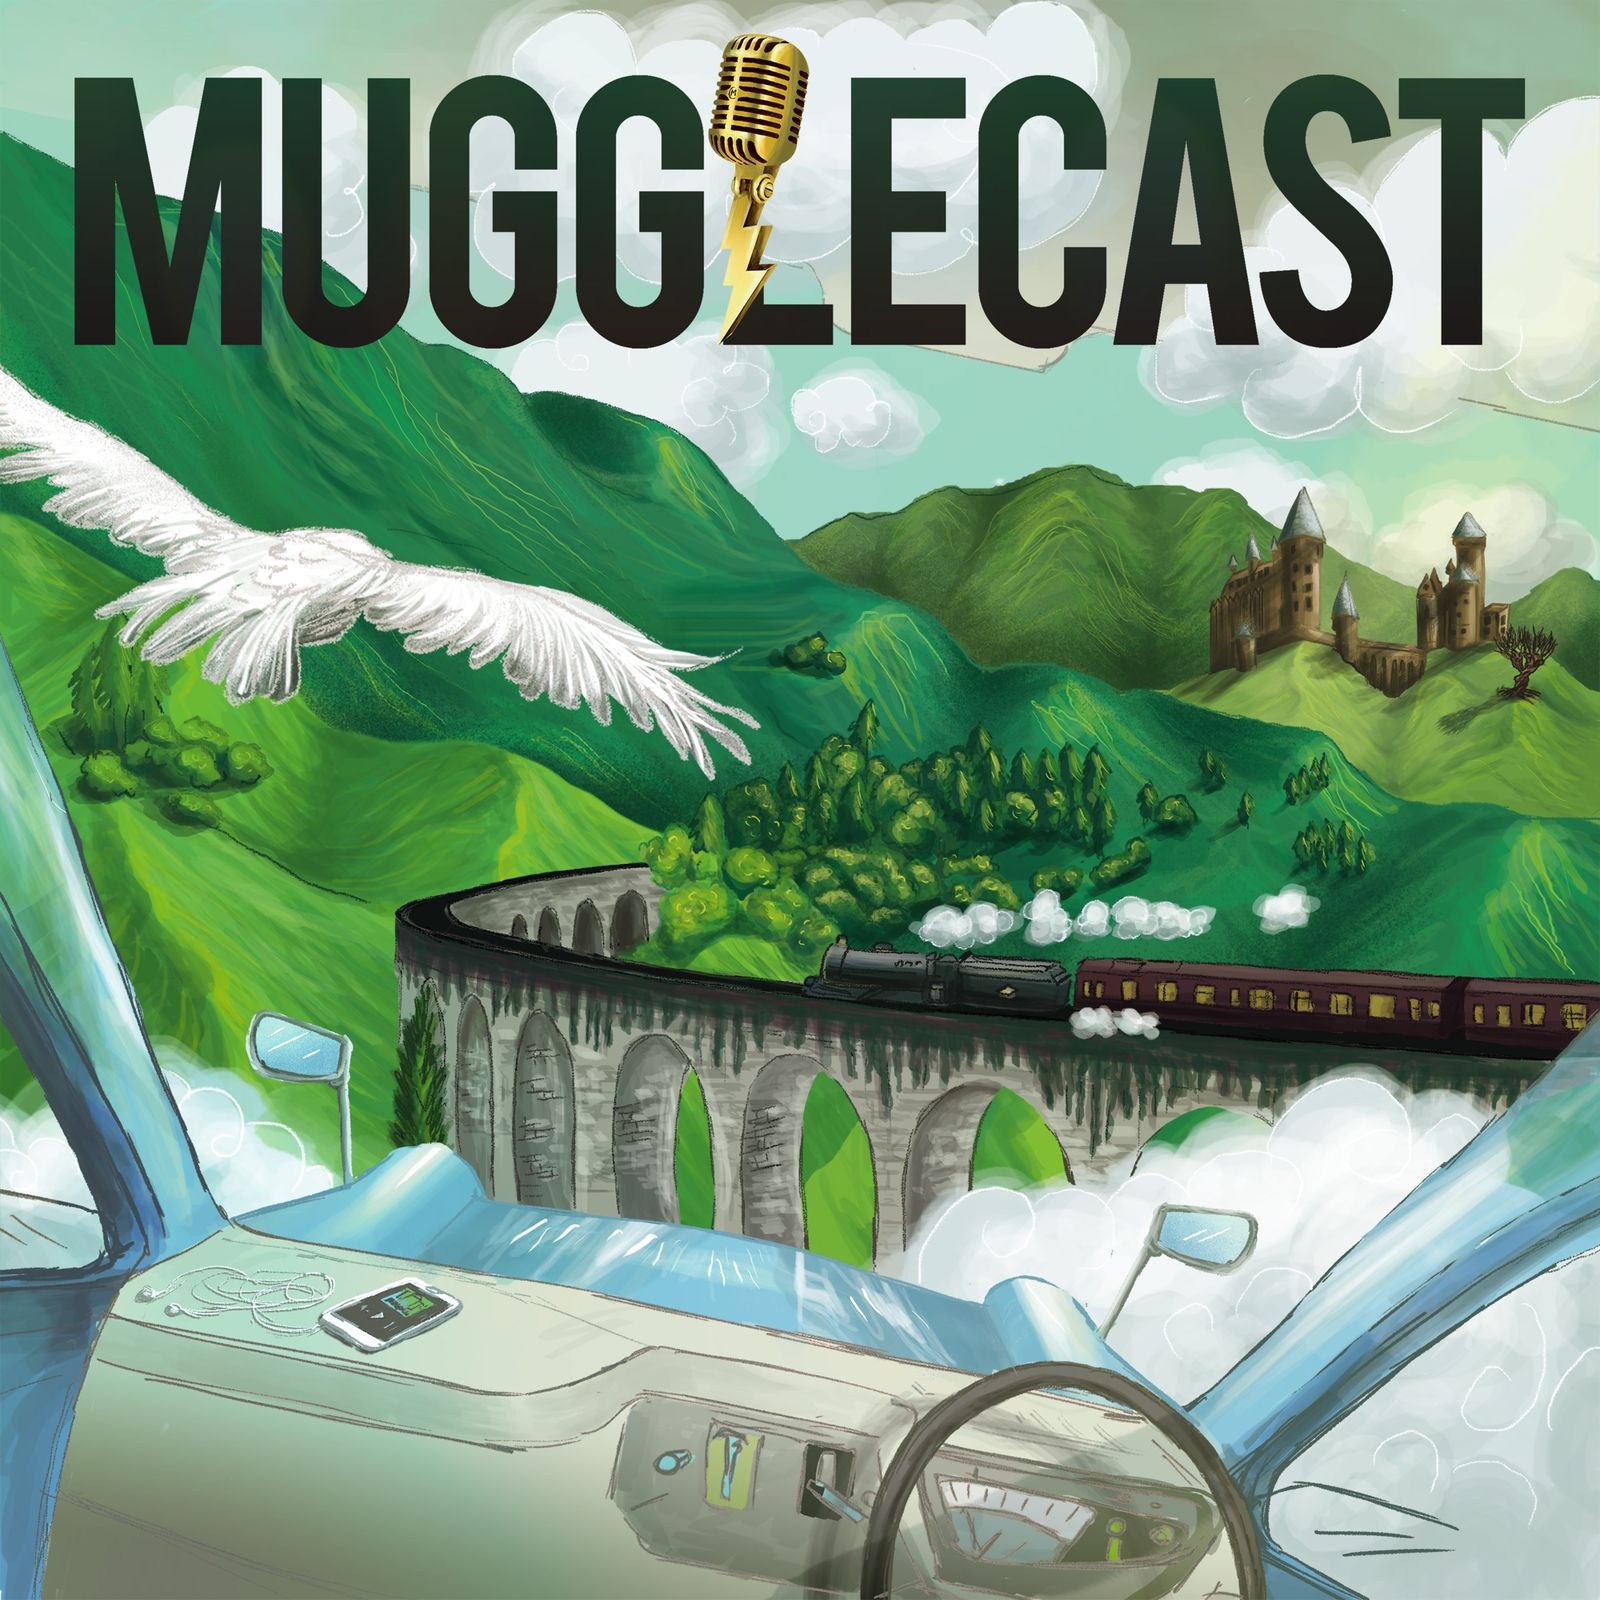 MuggleCast: the Harry Potter podcast podcast